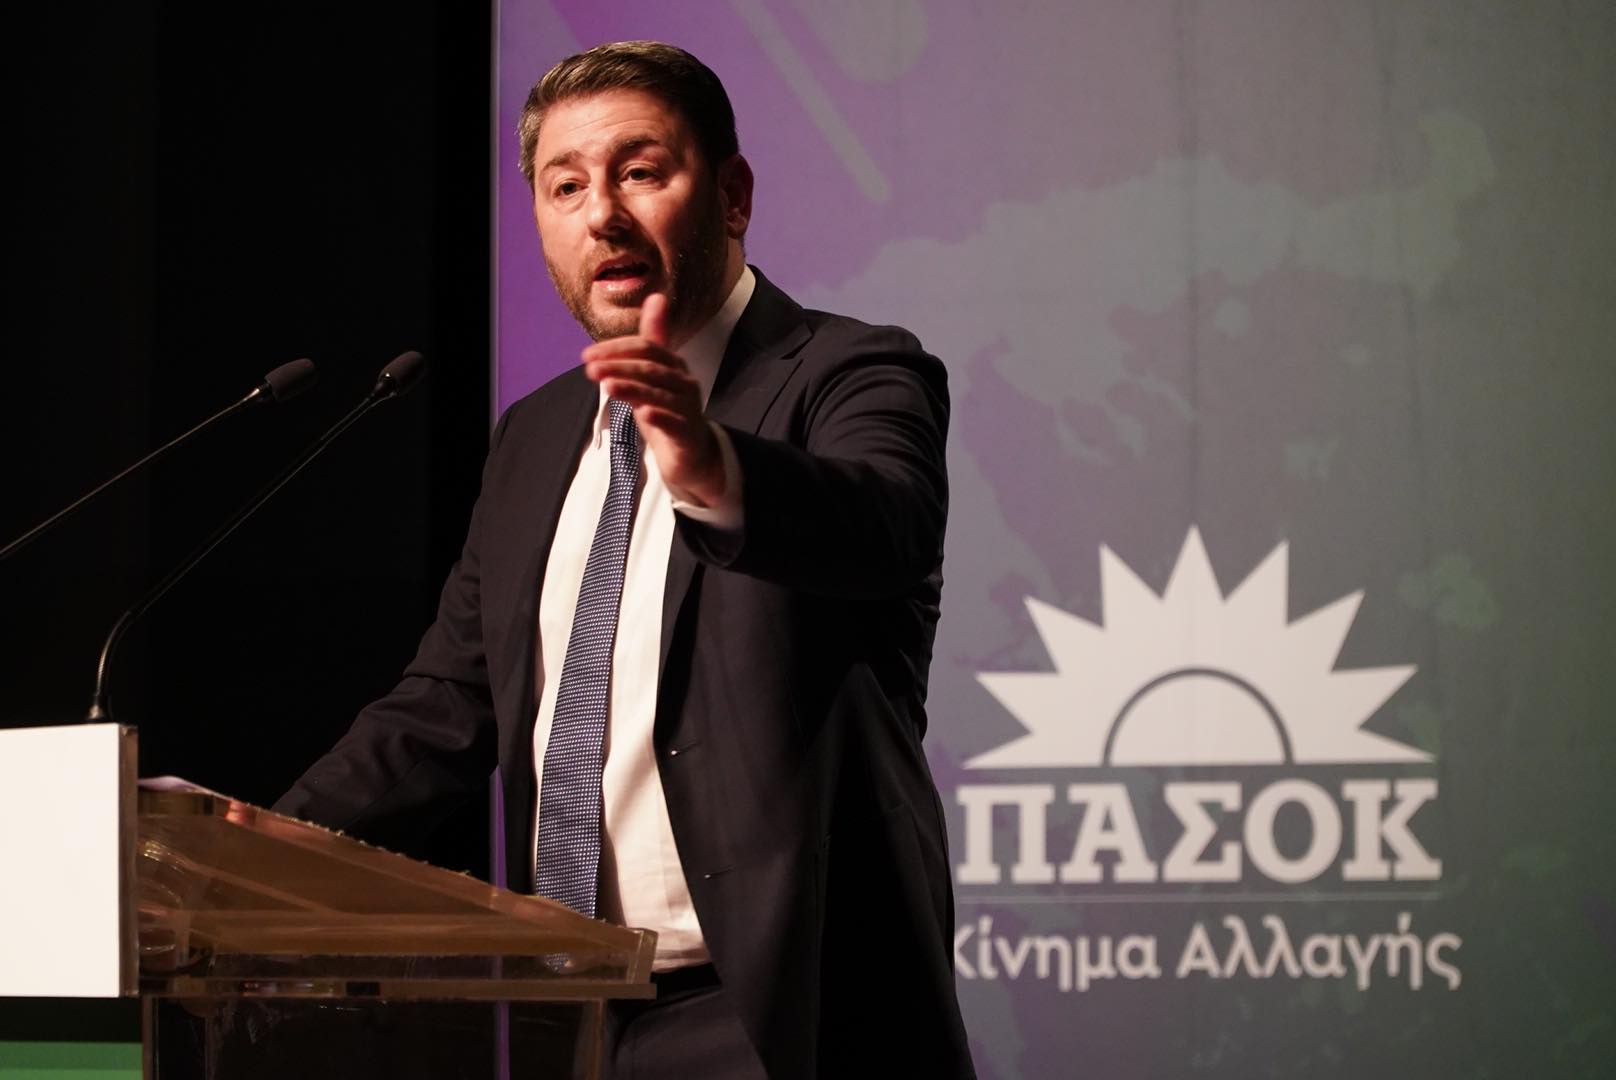 Ν. Ανδρουλάκης: «Ο λαϊκισμός δεν είναι μόνο χωρίς γραβάτα αλλά και με γραβάτα και με κολλάρο»